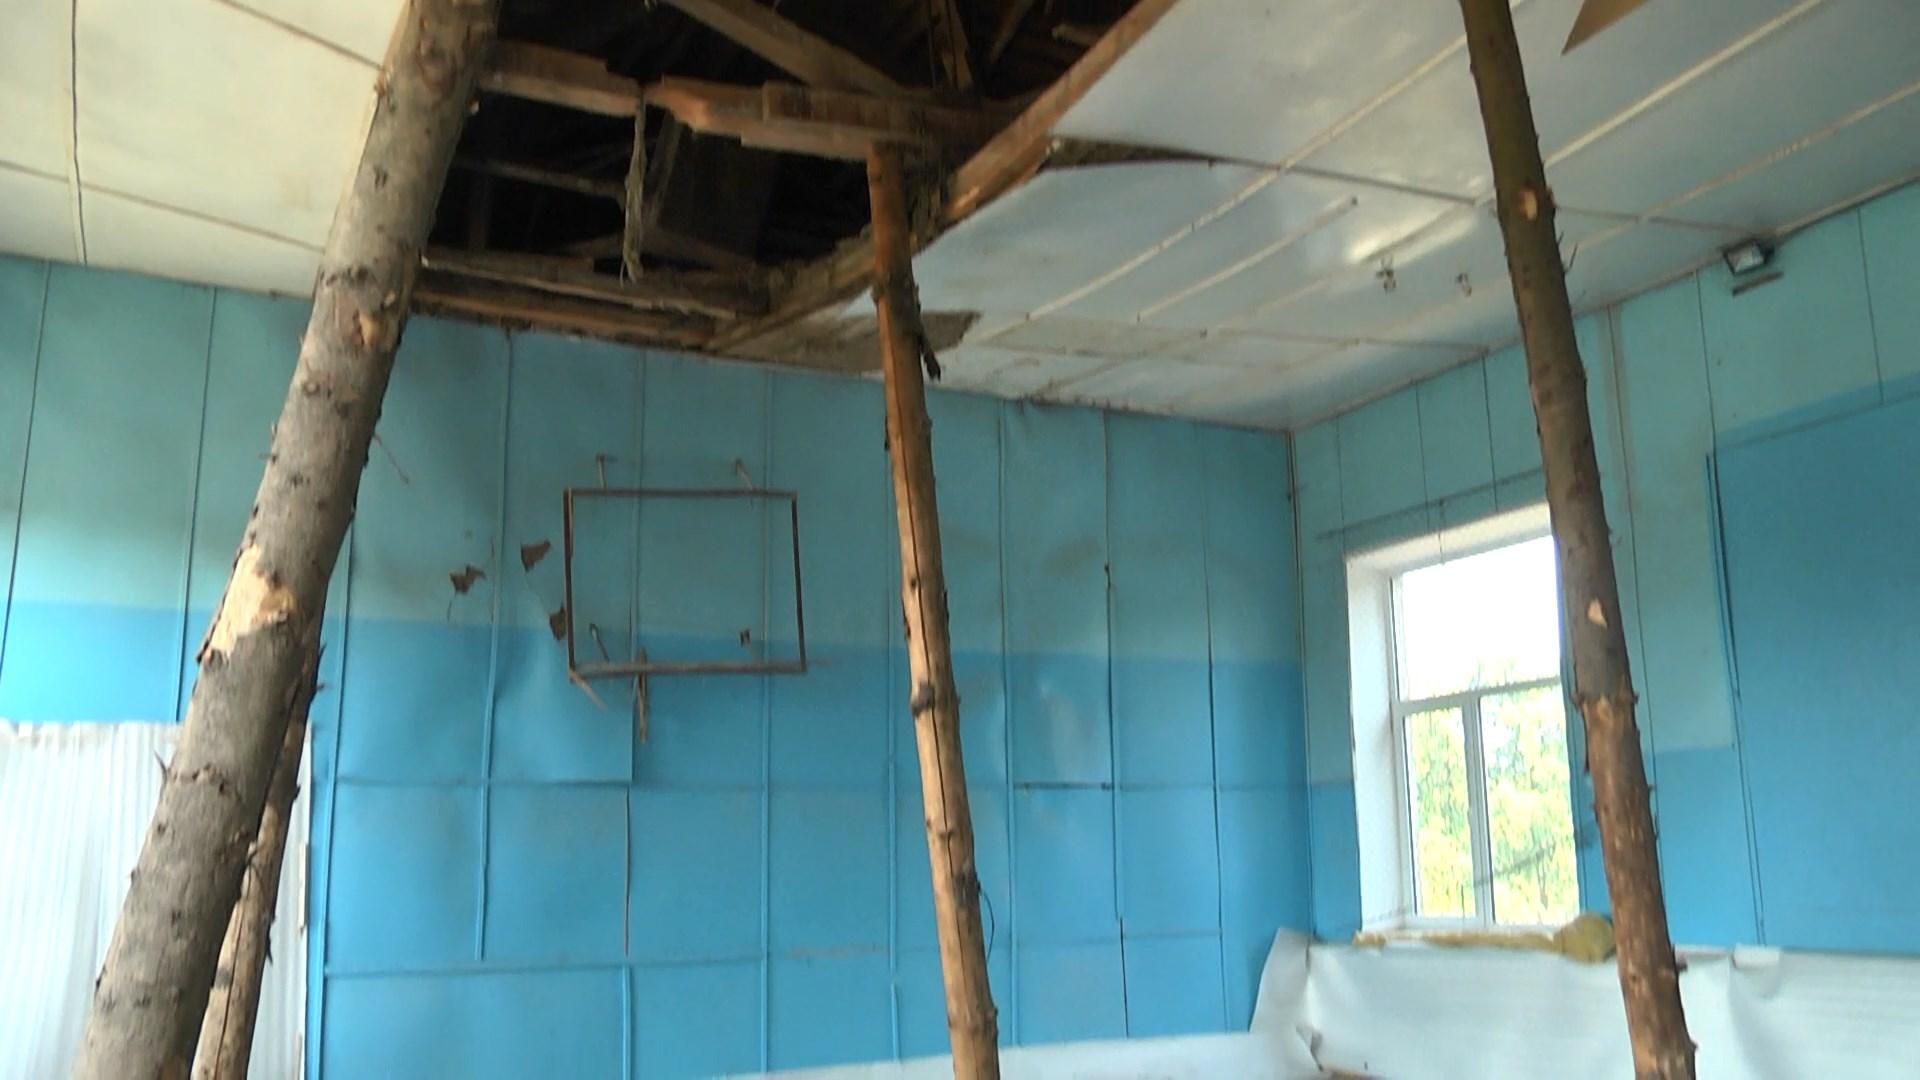 Зруйнована стеля та фізкультура в коридорі: в яких умовах навчаються діти у сільській школі